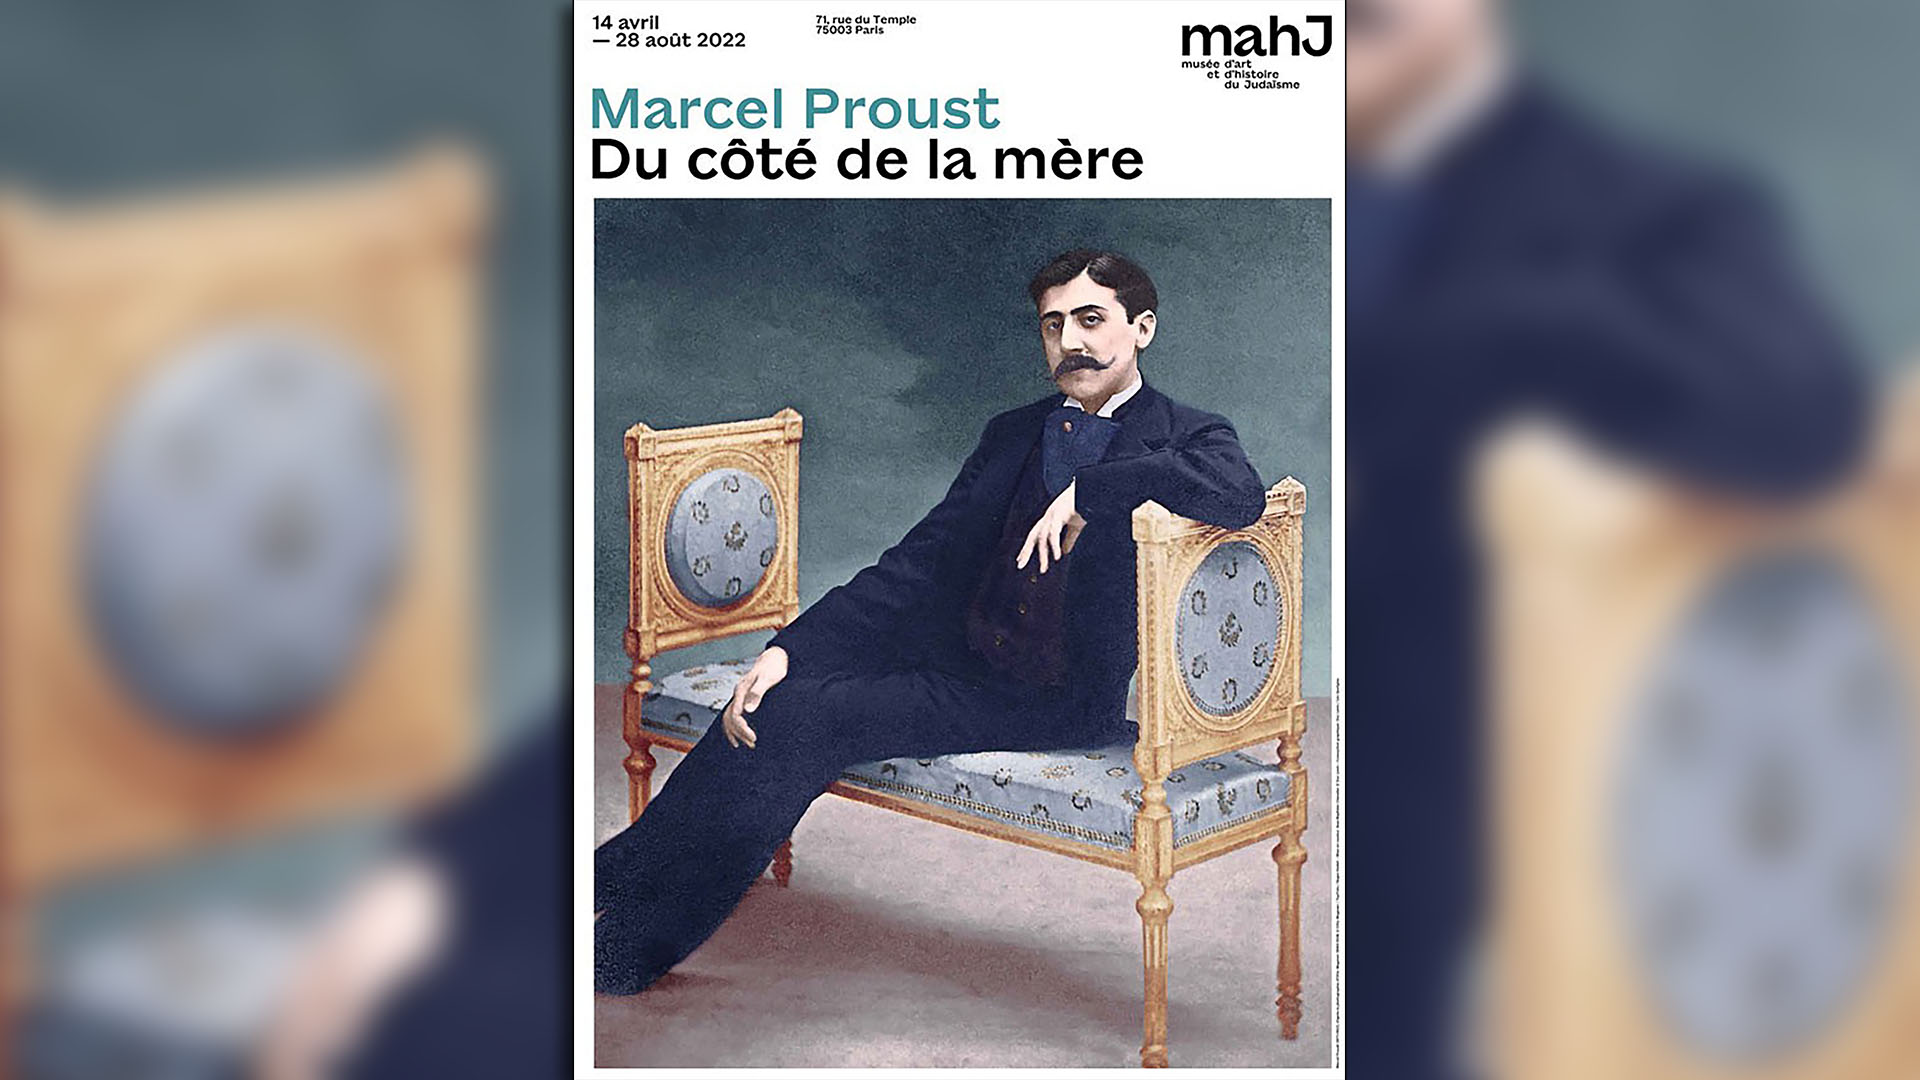 “Por el camino de la madre”: una exquisita muestra sobre Proust y la rama judía de su familia